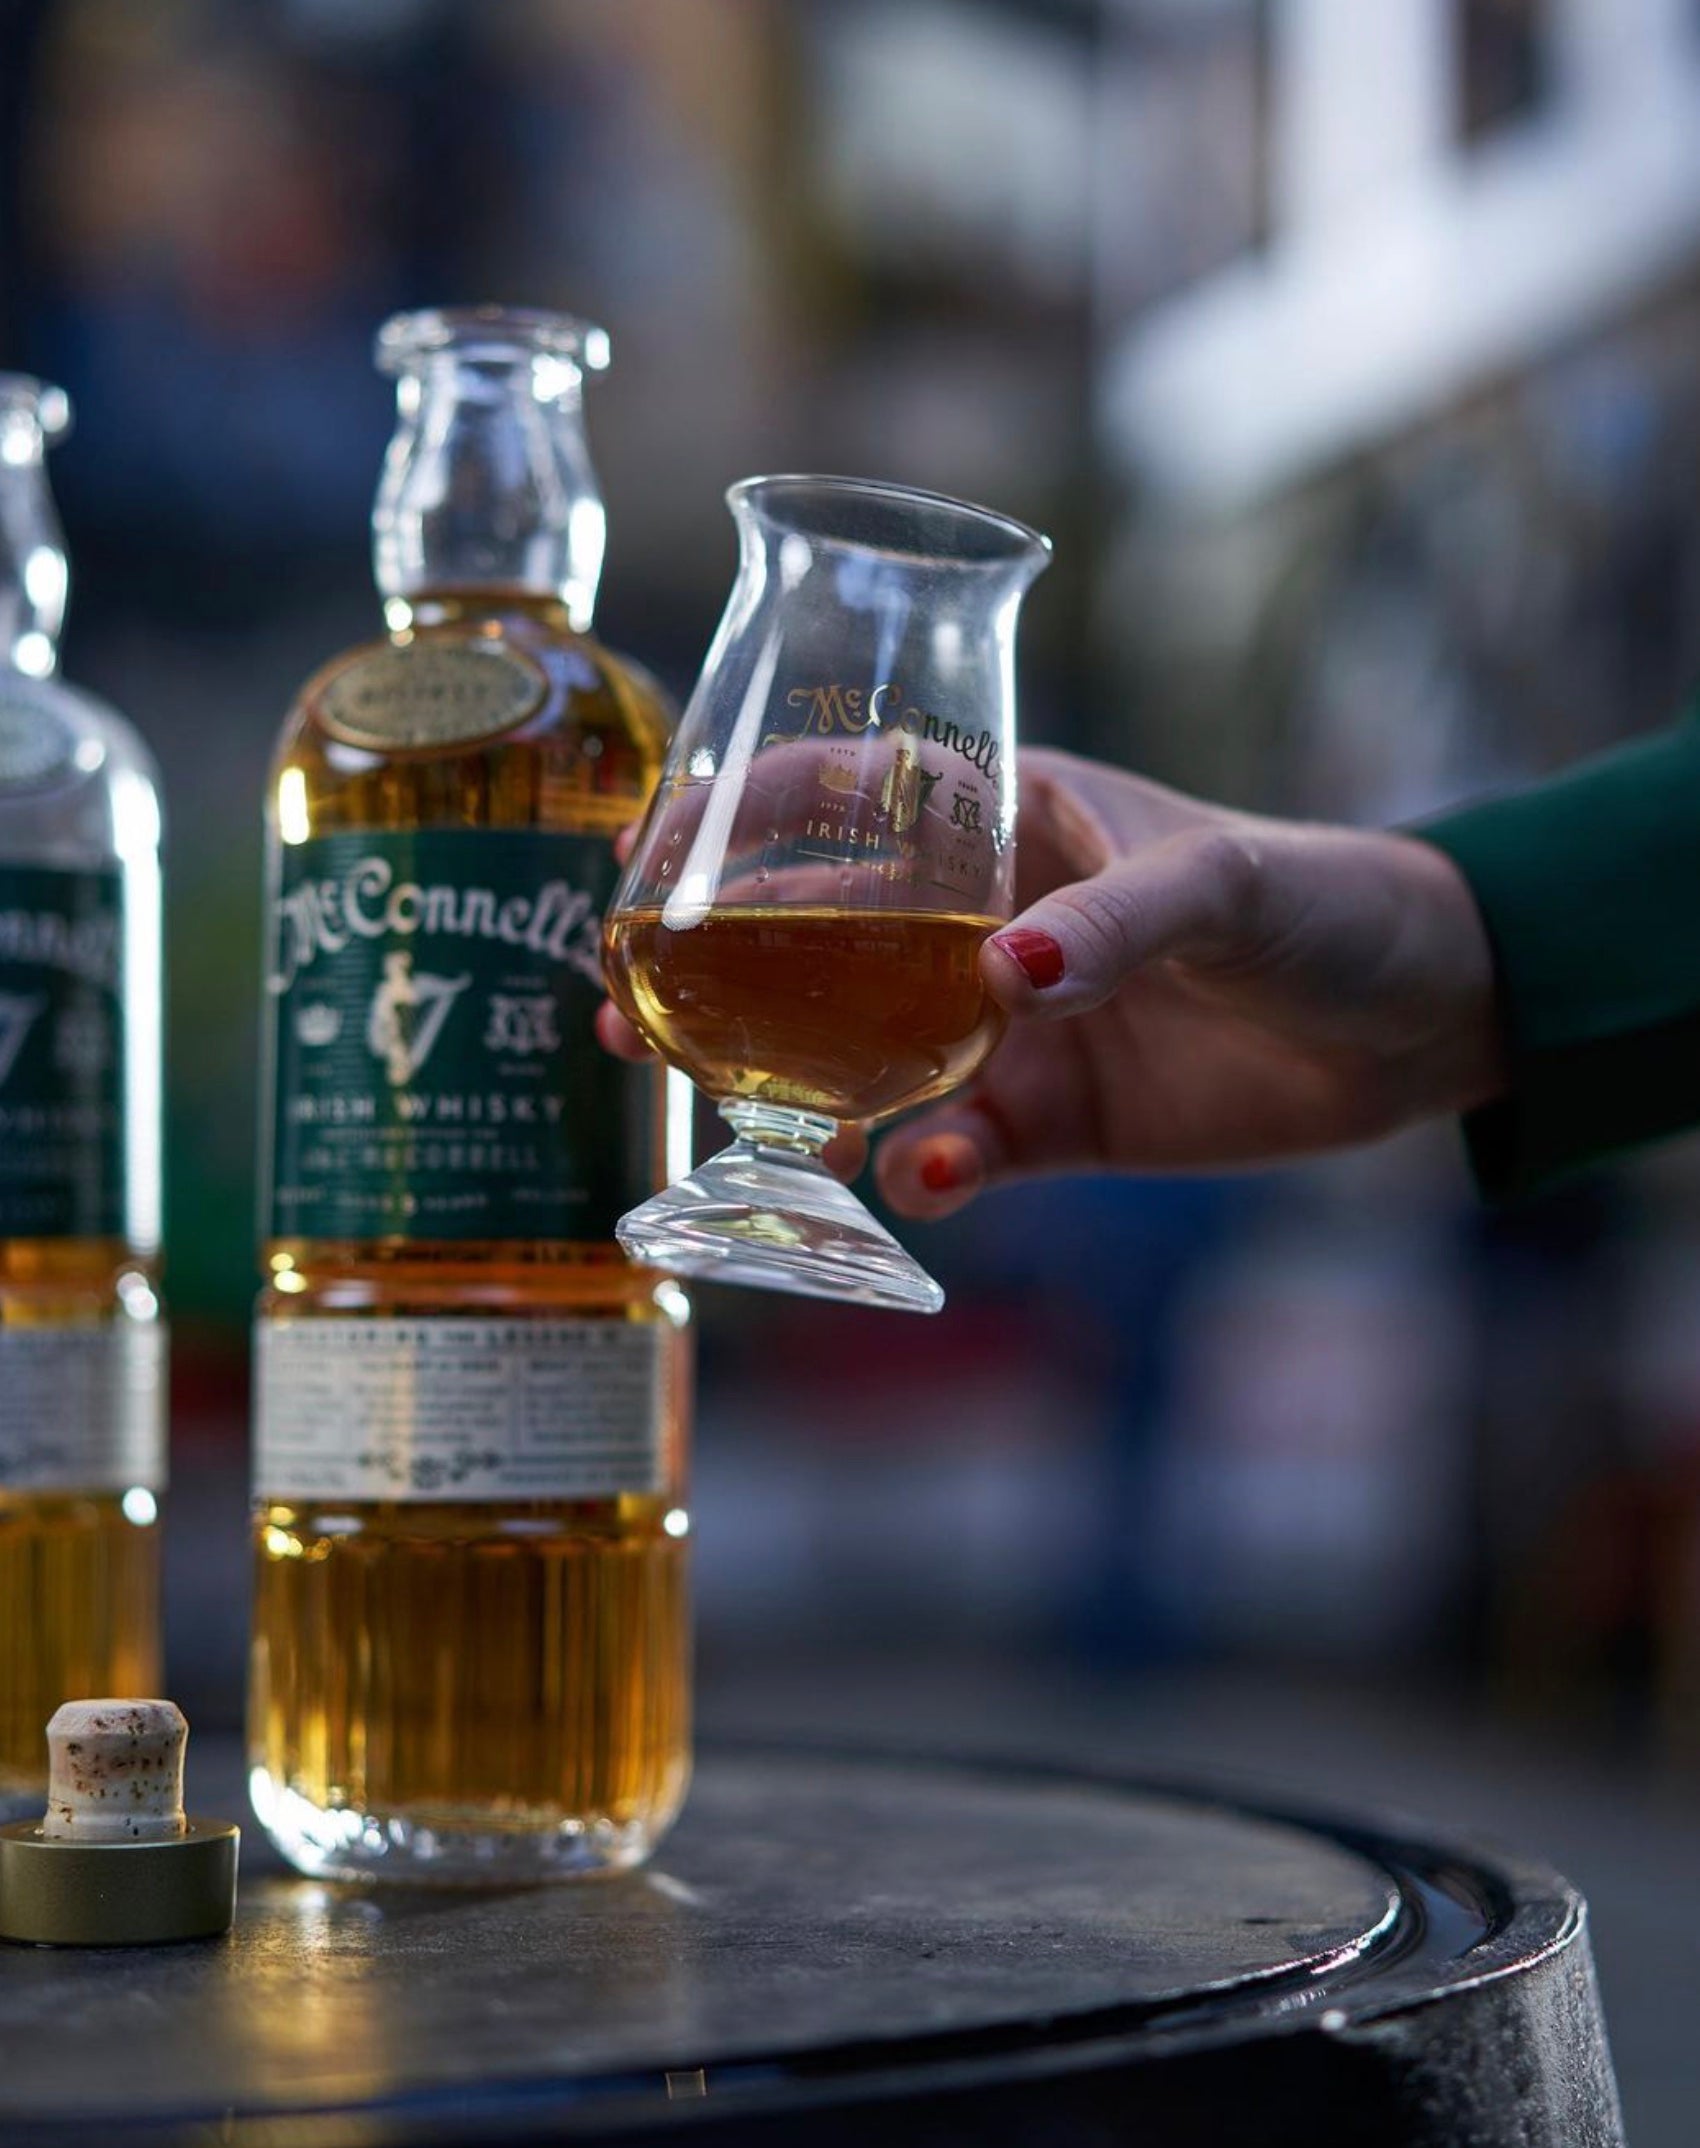 Order McConnell's Irish Whisky | 750mL bottle